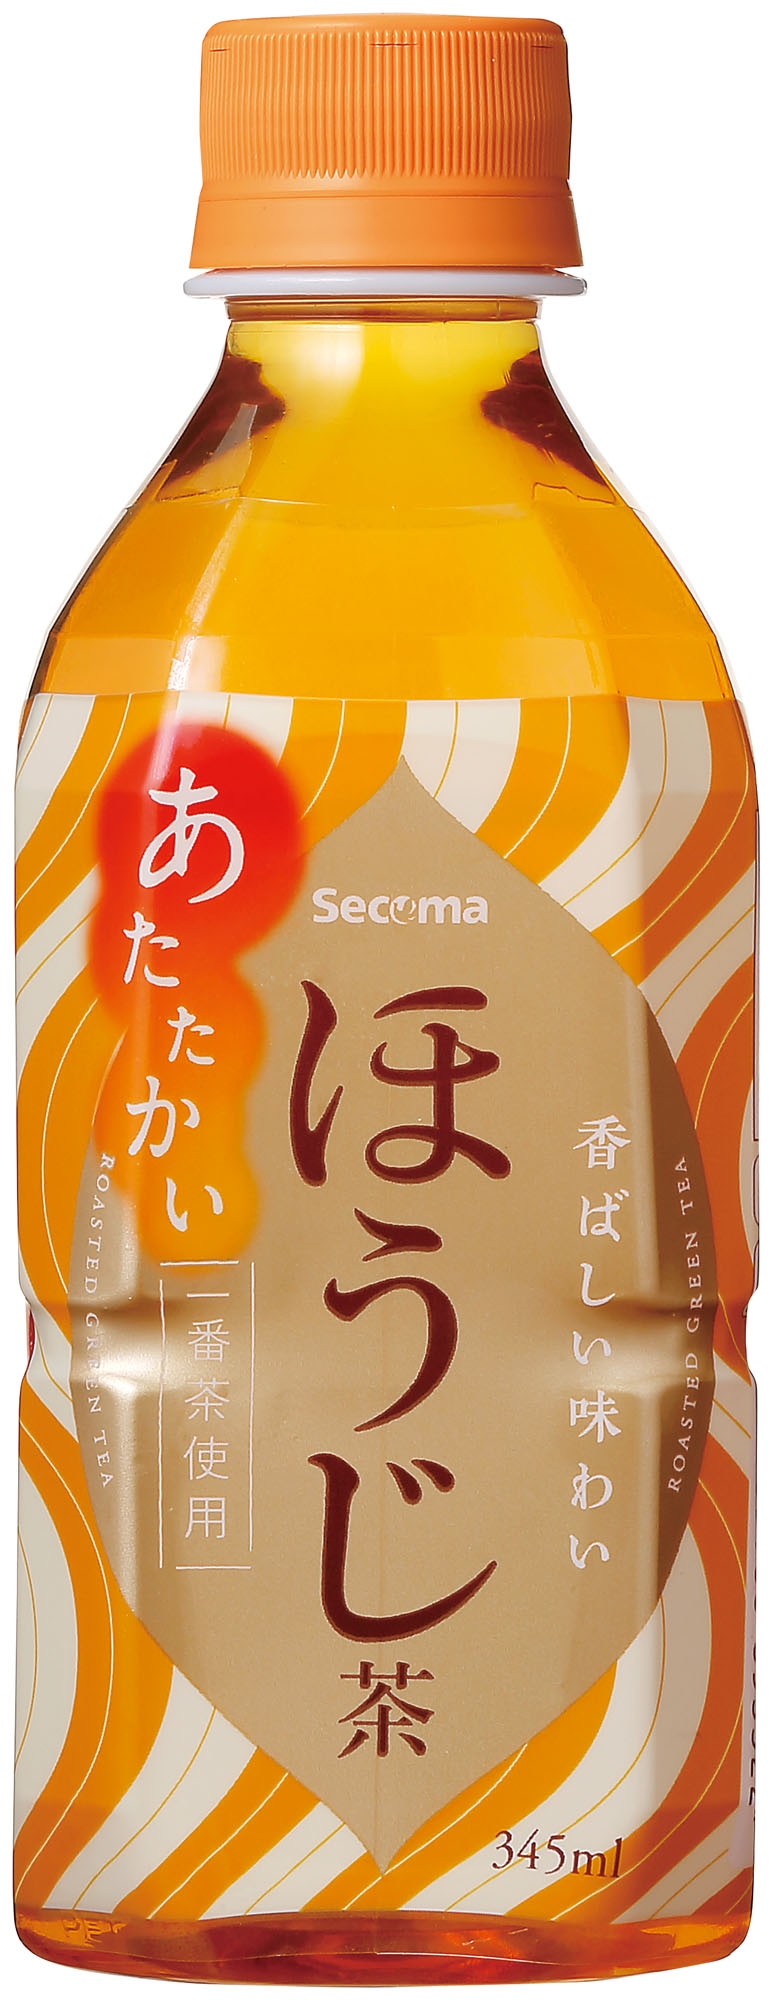 Secoma あたたかいほうじ茶 345ml 24本入 - セイコーマート公式通販